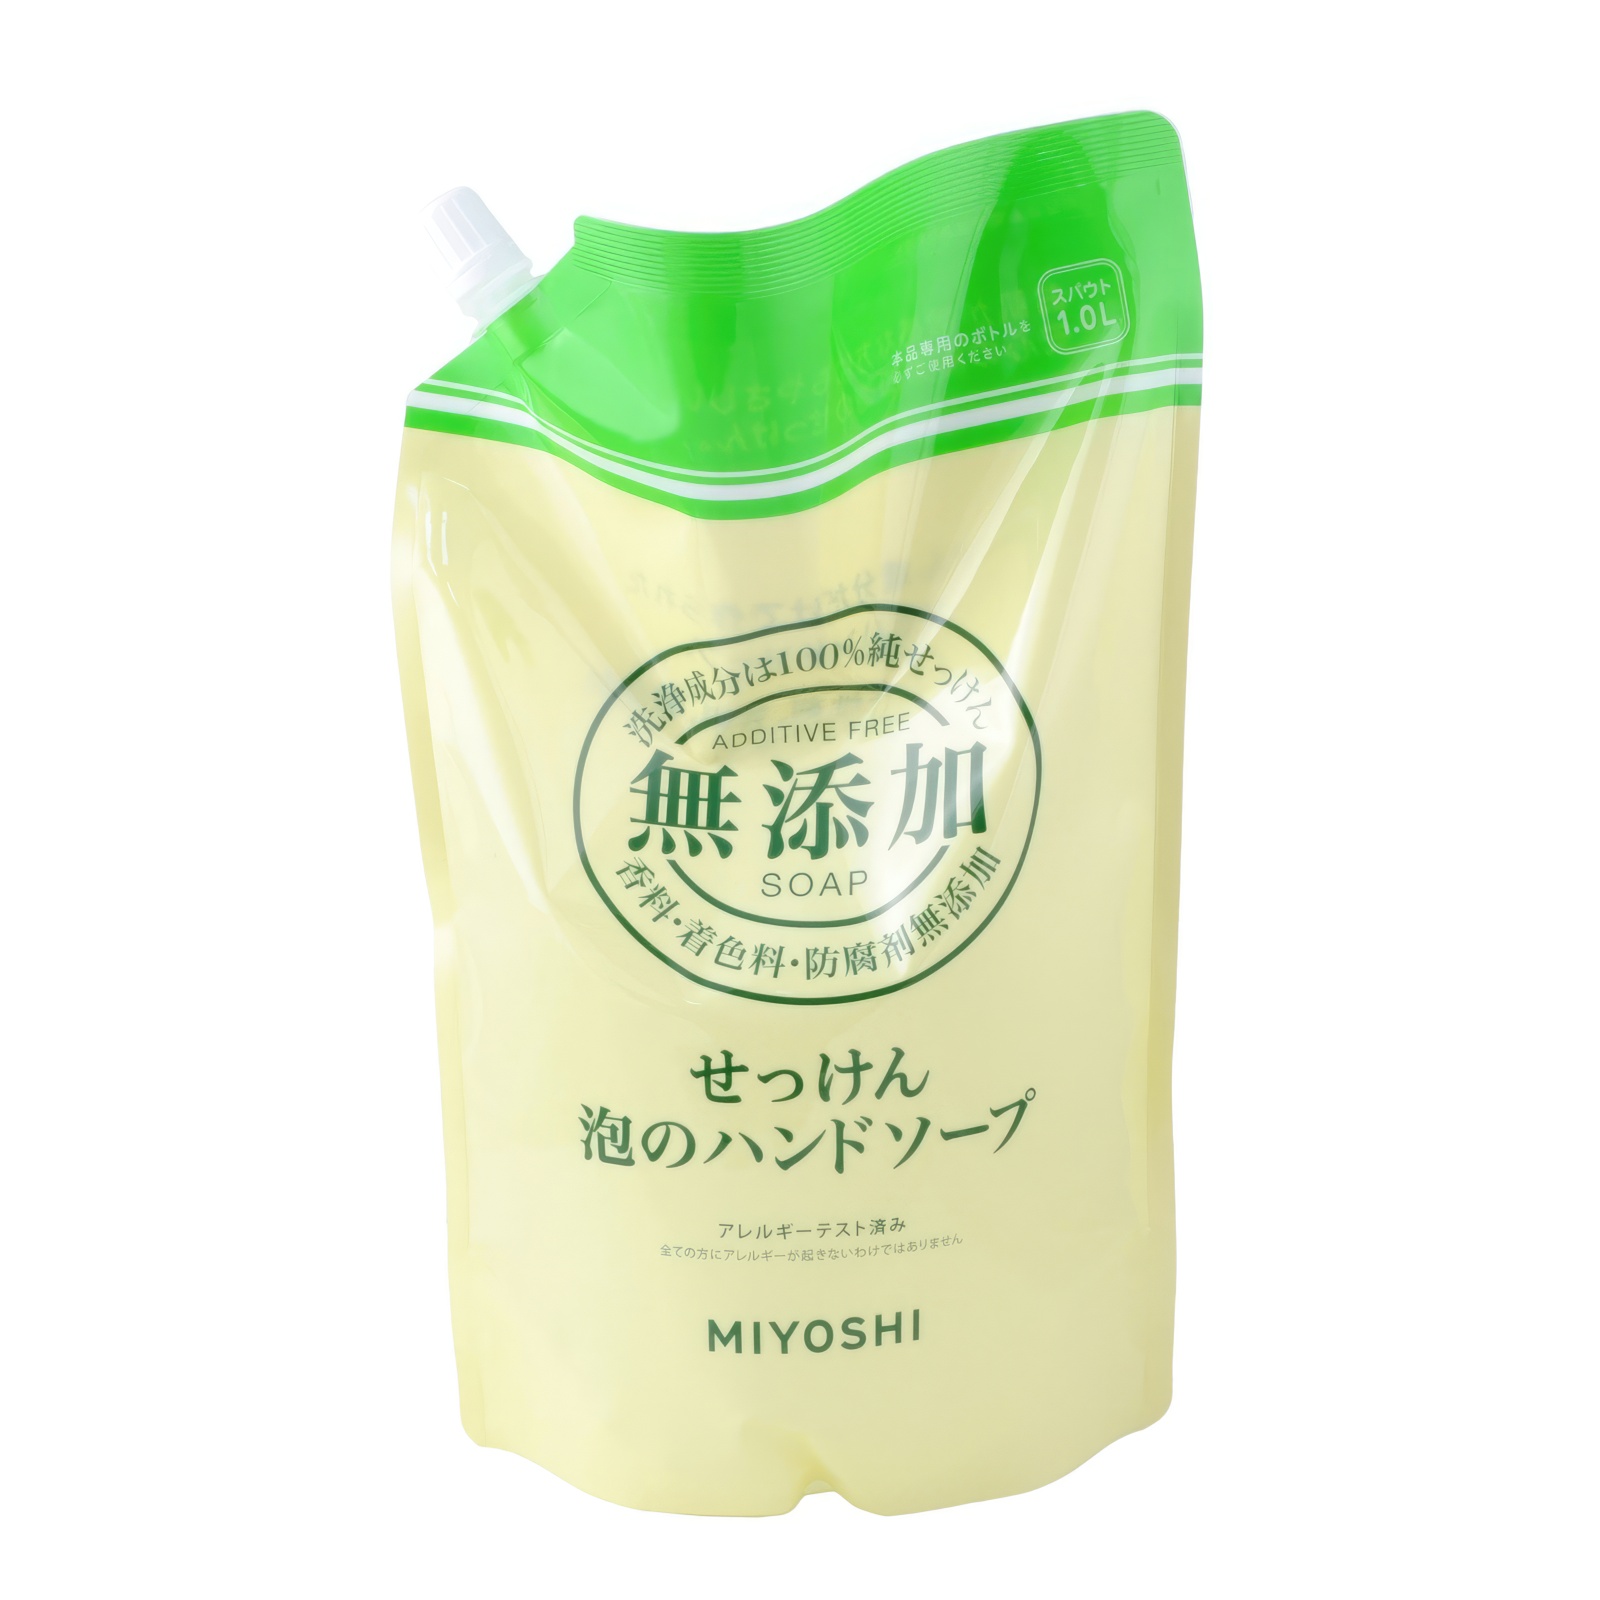 Жидкое мыло MIYOSHI Натуральное пенящееся эко для рук дойпак 1 л мыльная основа brilliant sls free white вес 10 кг